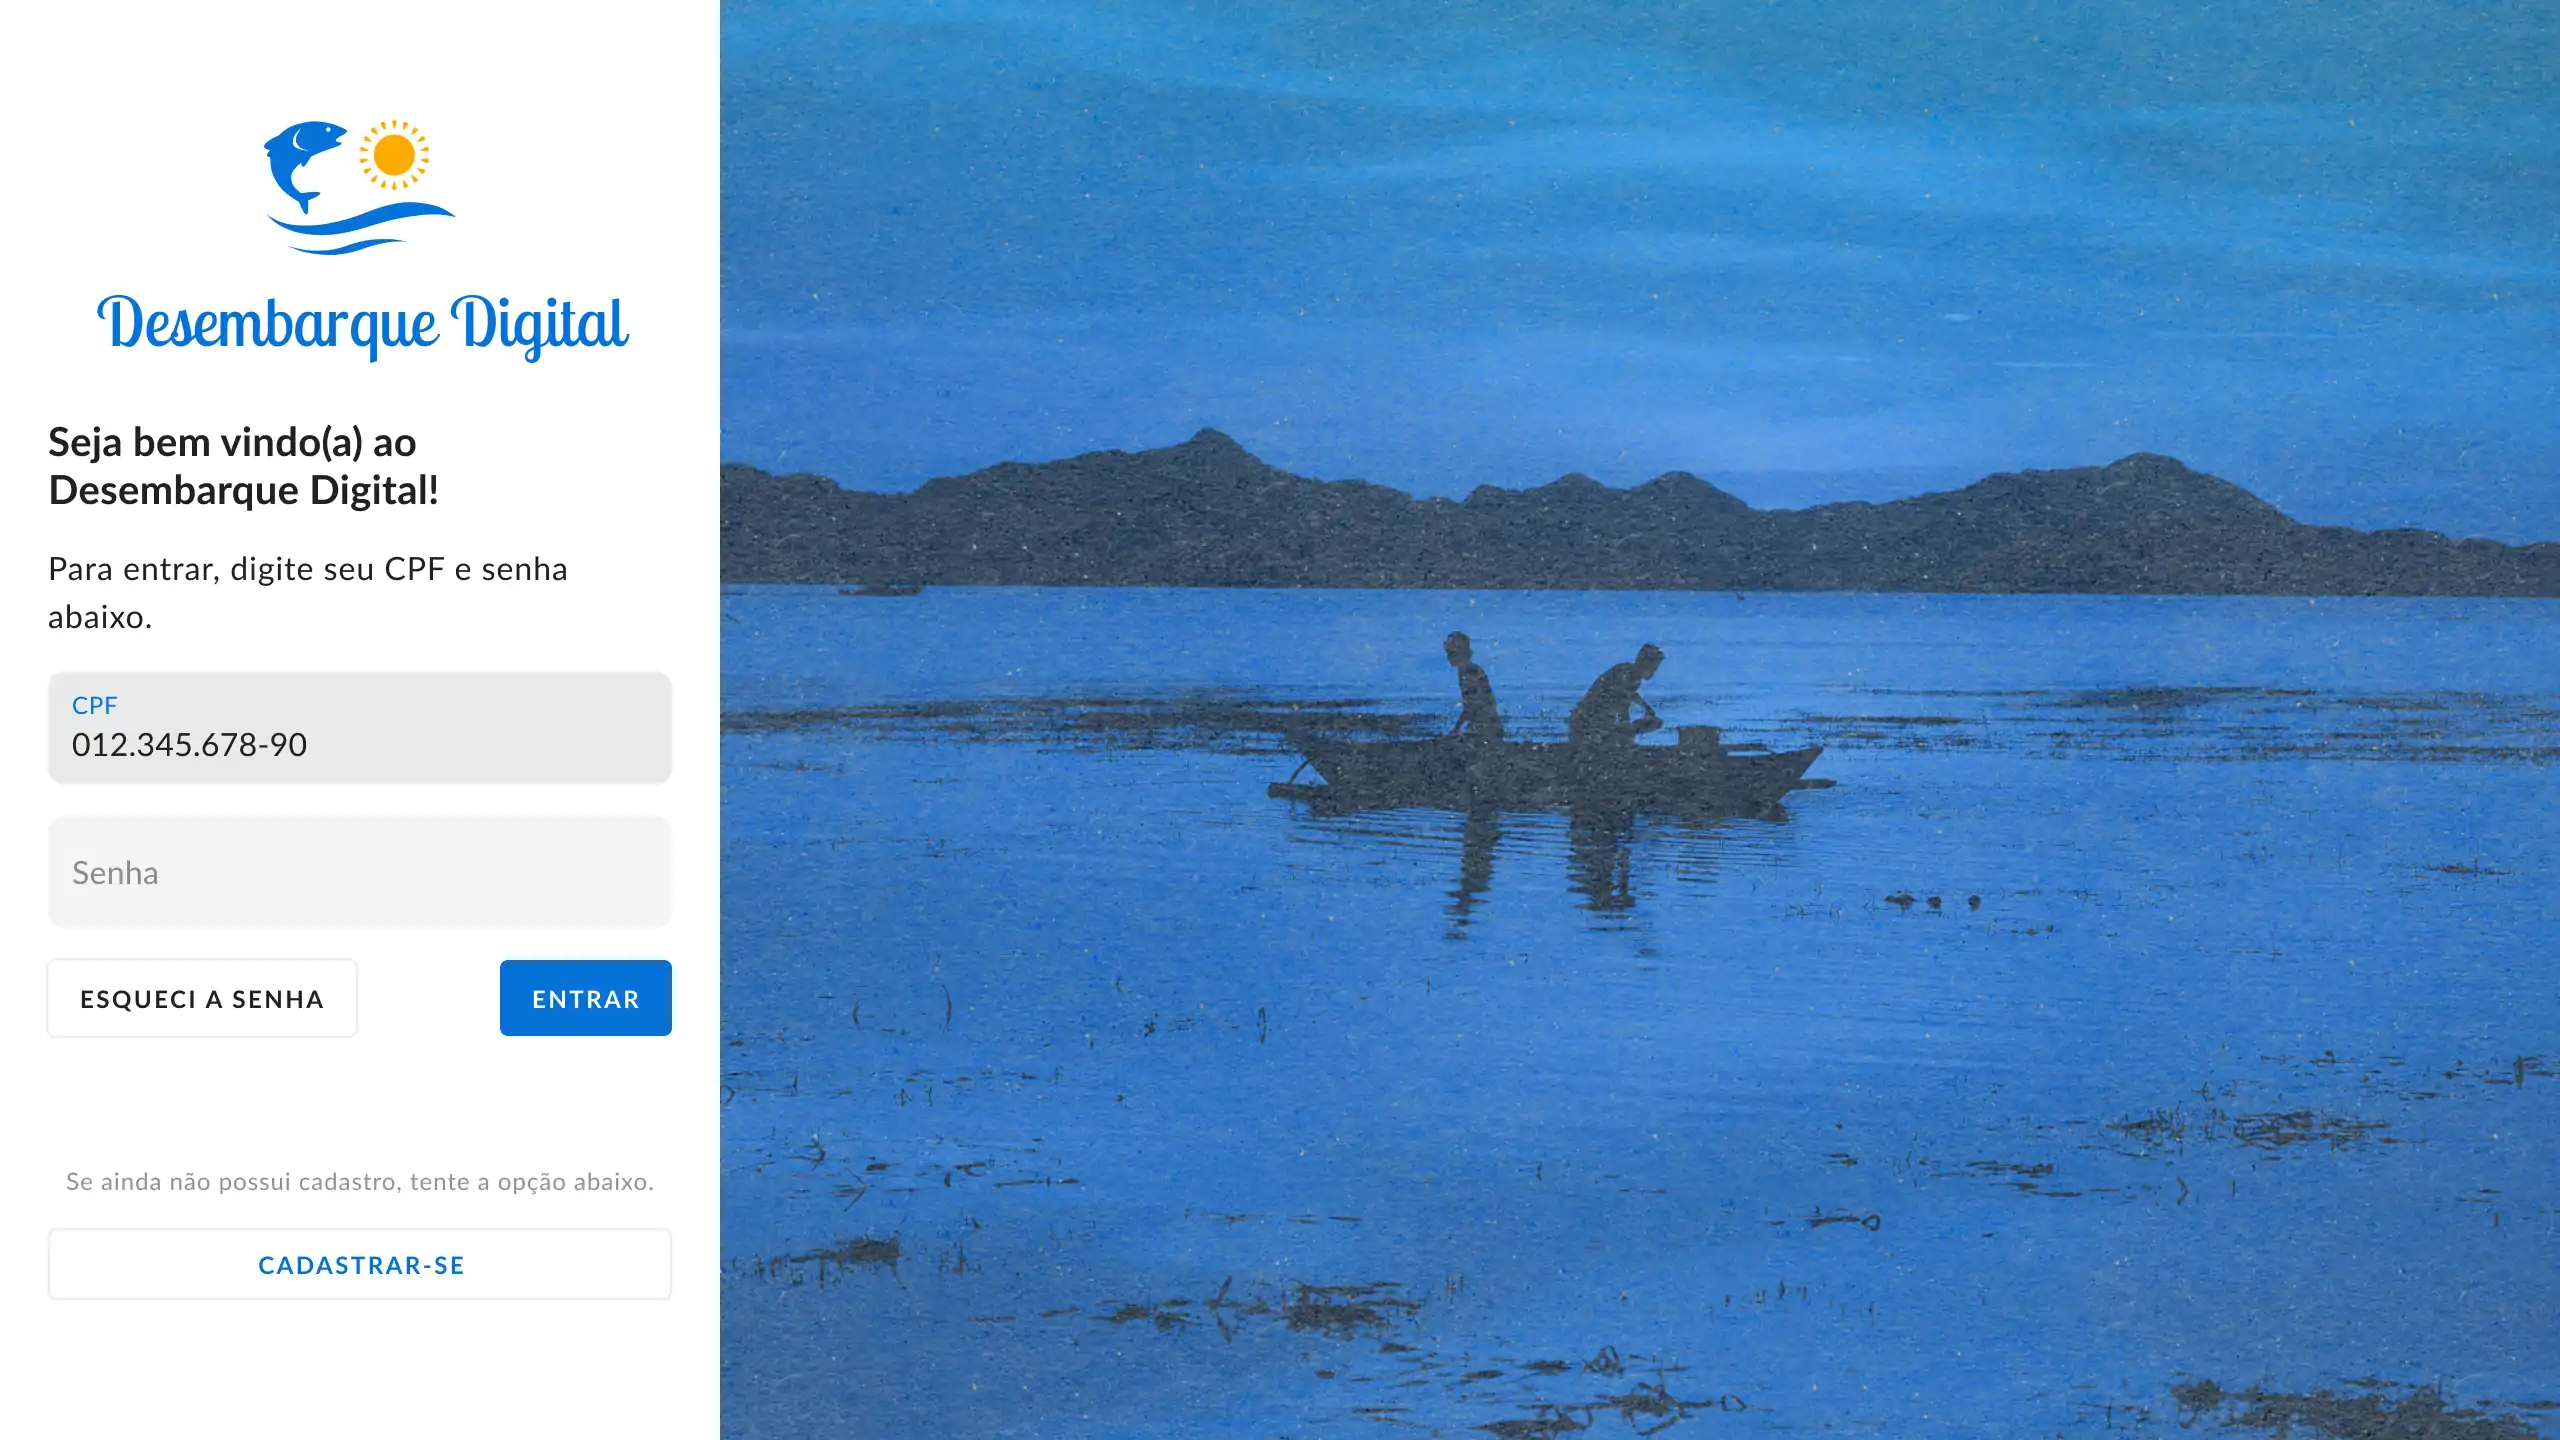 Tela de login para desktop, utilizando o logo do Desembarque Digital (um peixe pulando da água com o sol ao lado), campo de usuário e senha. Ao lado, para preencher espaço, uma foto estilizada em azul de duas pessoas na canoa pescando.